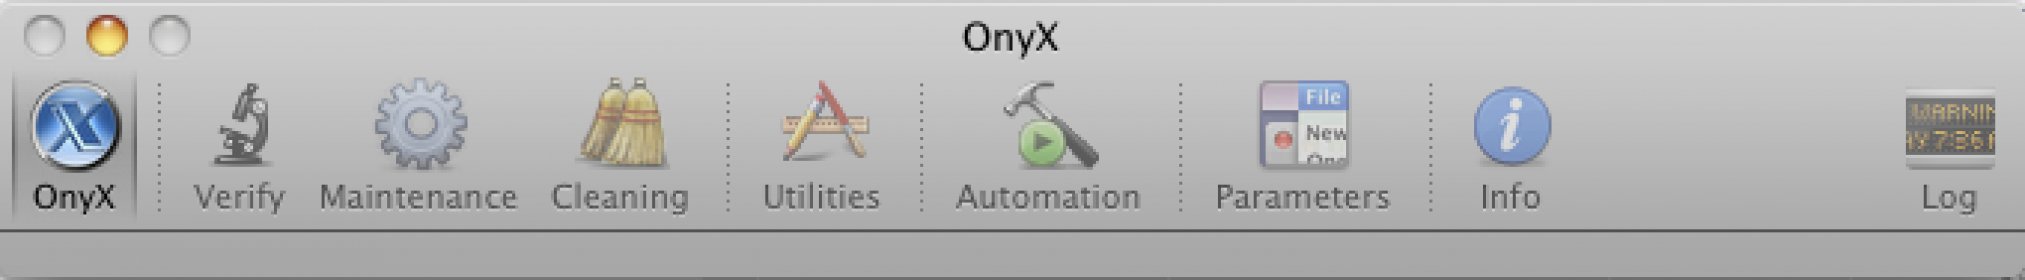 onyx cleaner for mac 10.6.8